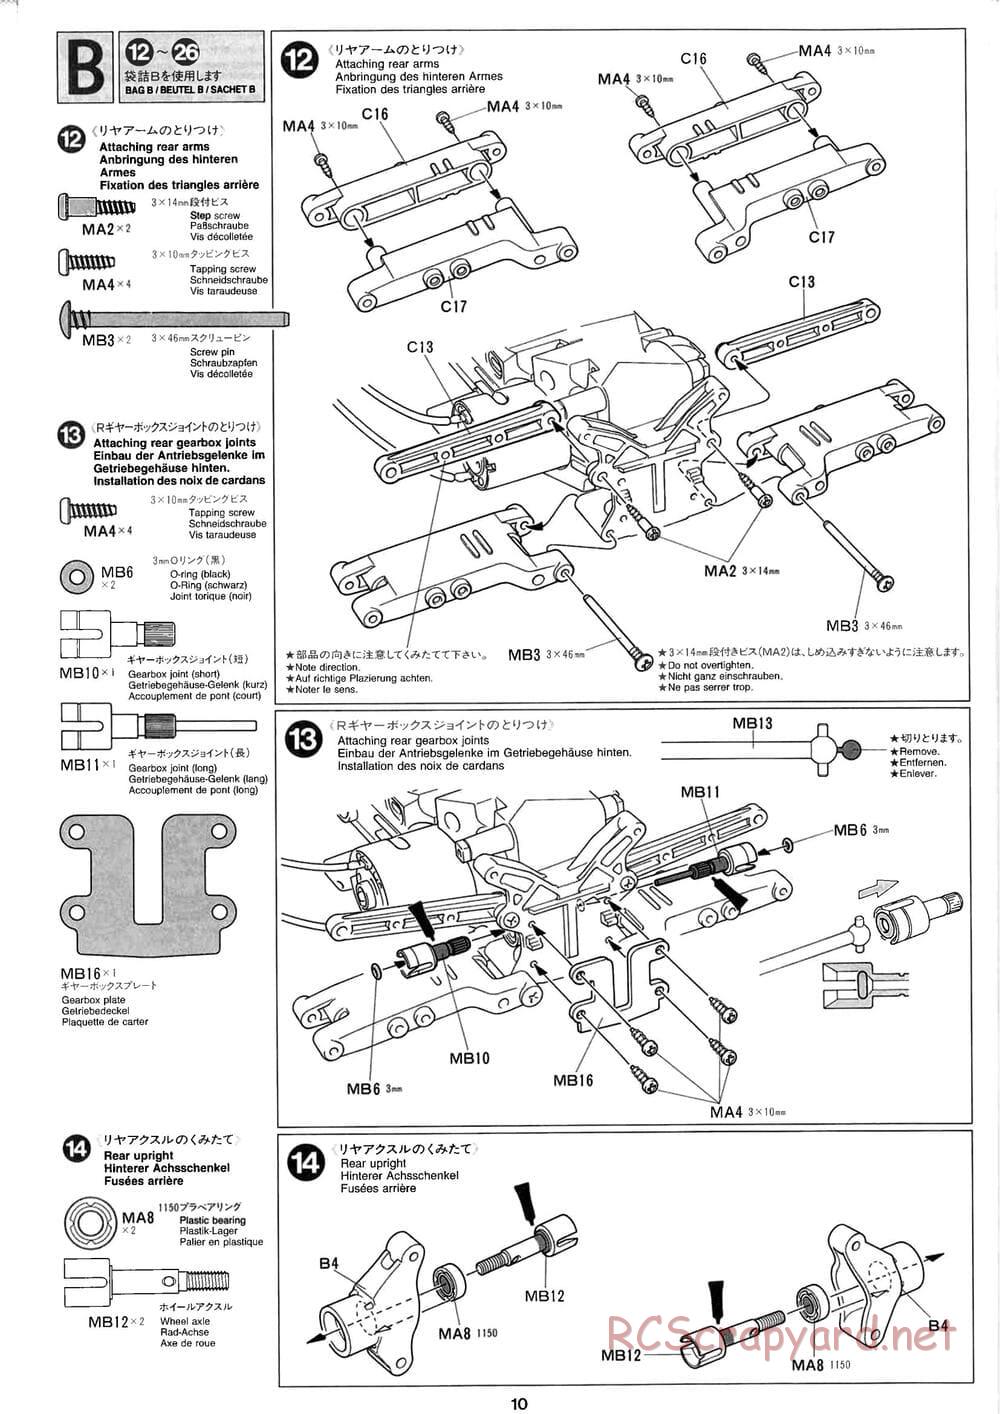 Tamiya - Baja Champ - TL-01B Chassis - Manual - Page 10